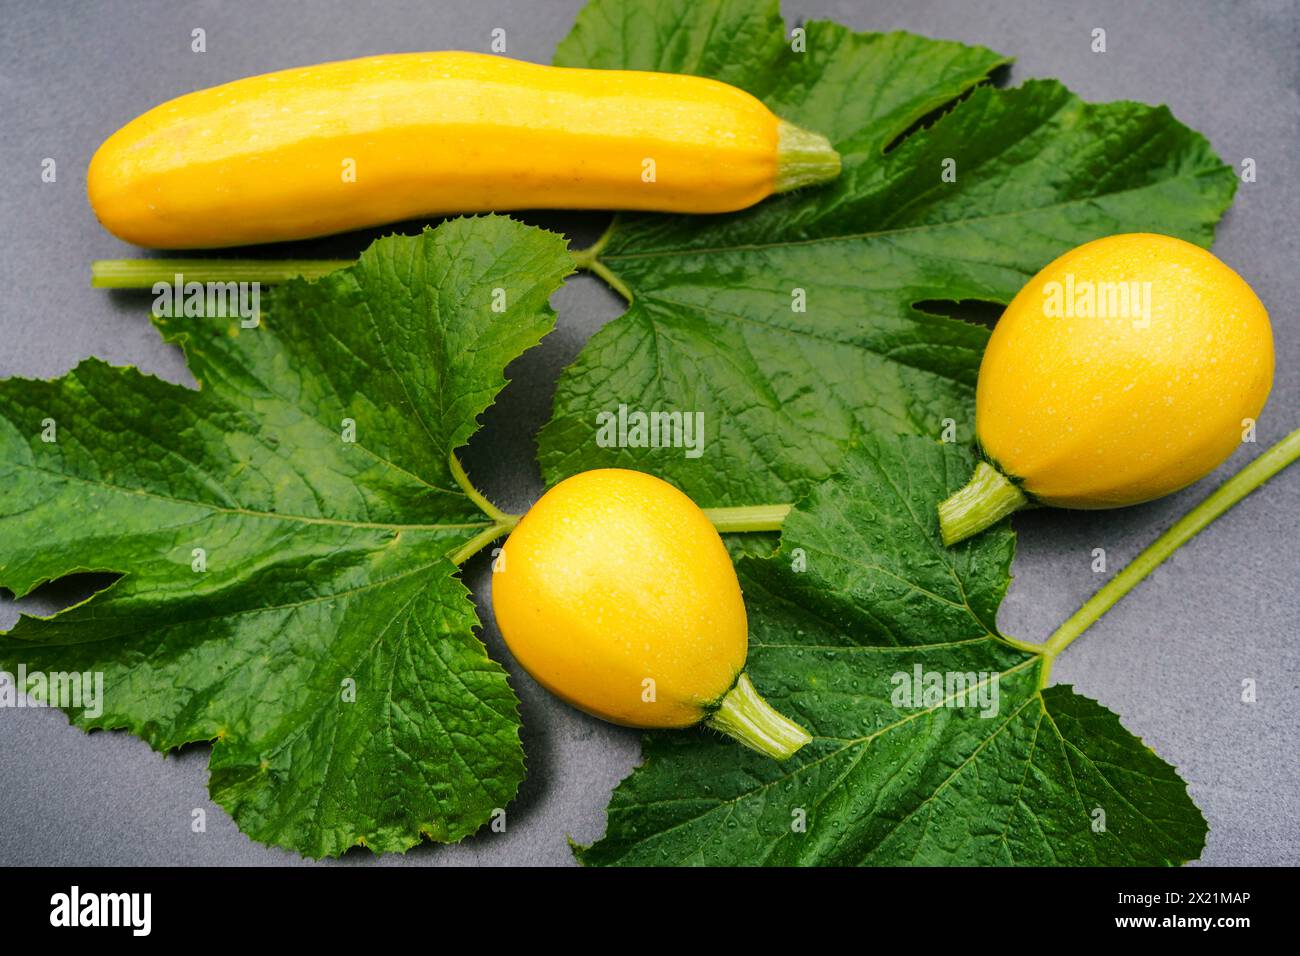 courgette, zucchini (Cucurbita pepo var. giromontiia, Cucurbita pepo subsp. pepo convar. giromontiina), yellow zucchinis Stock Photo